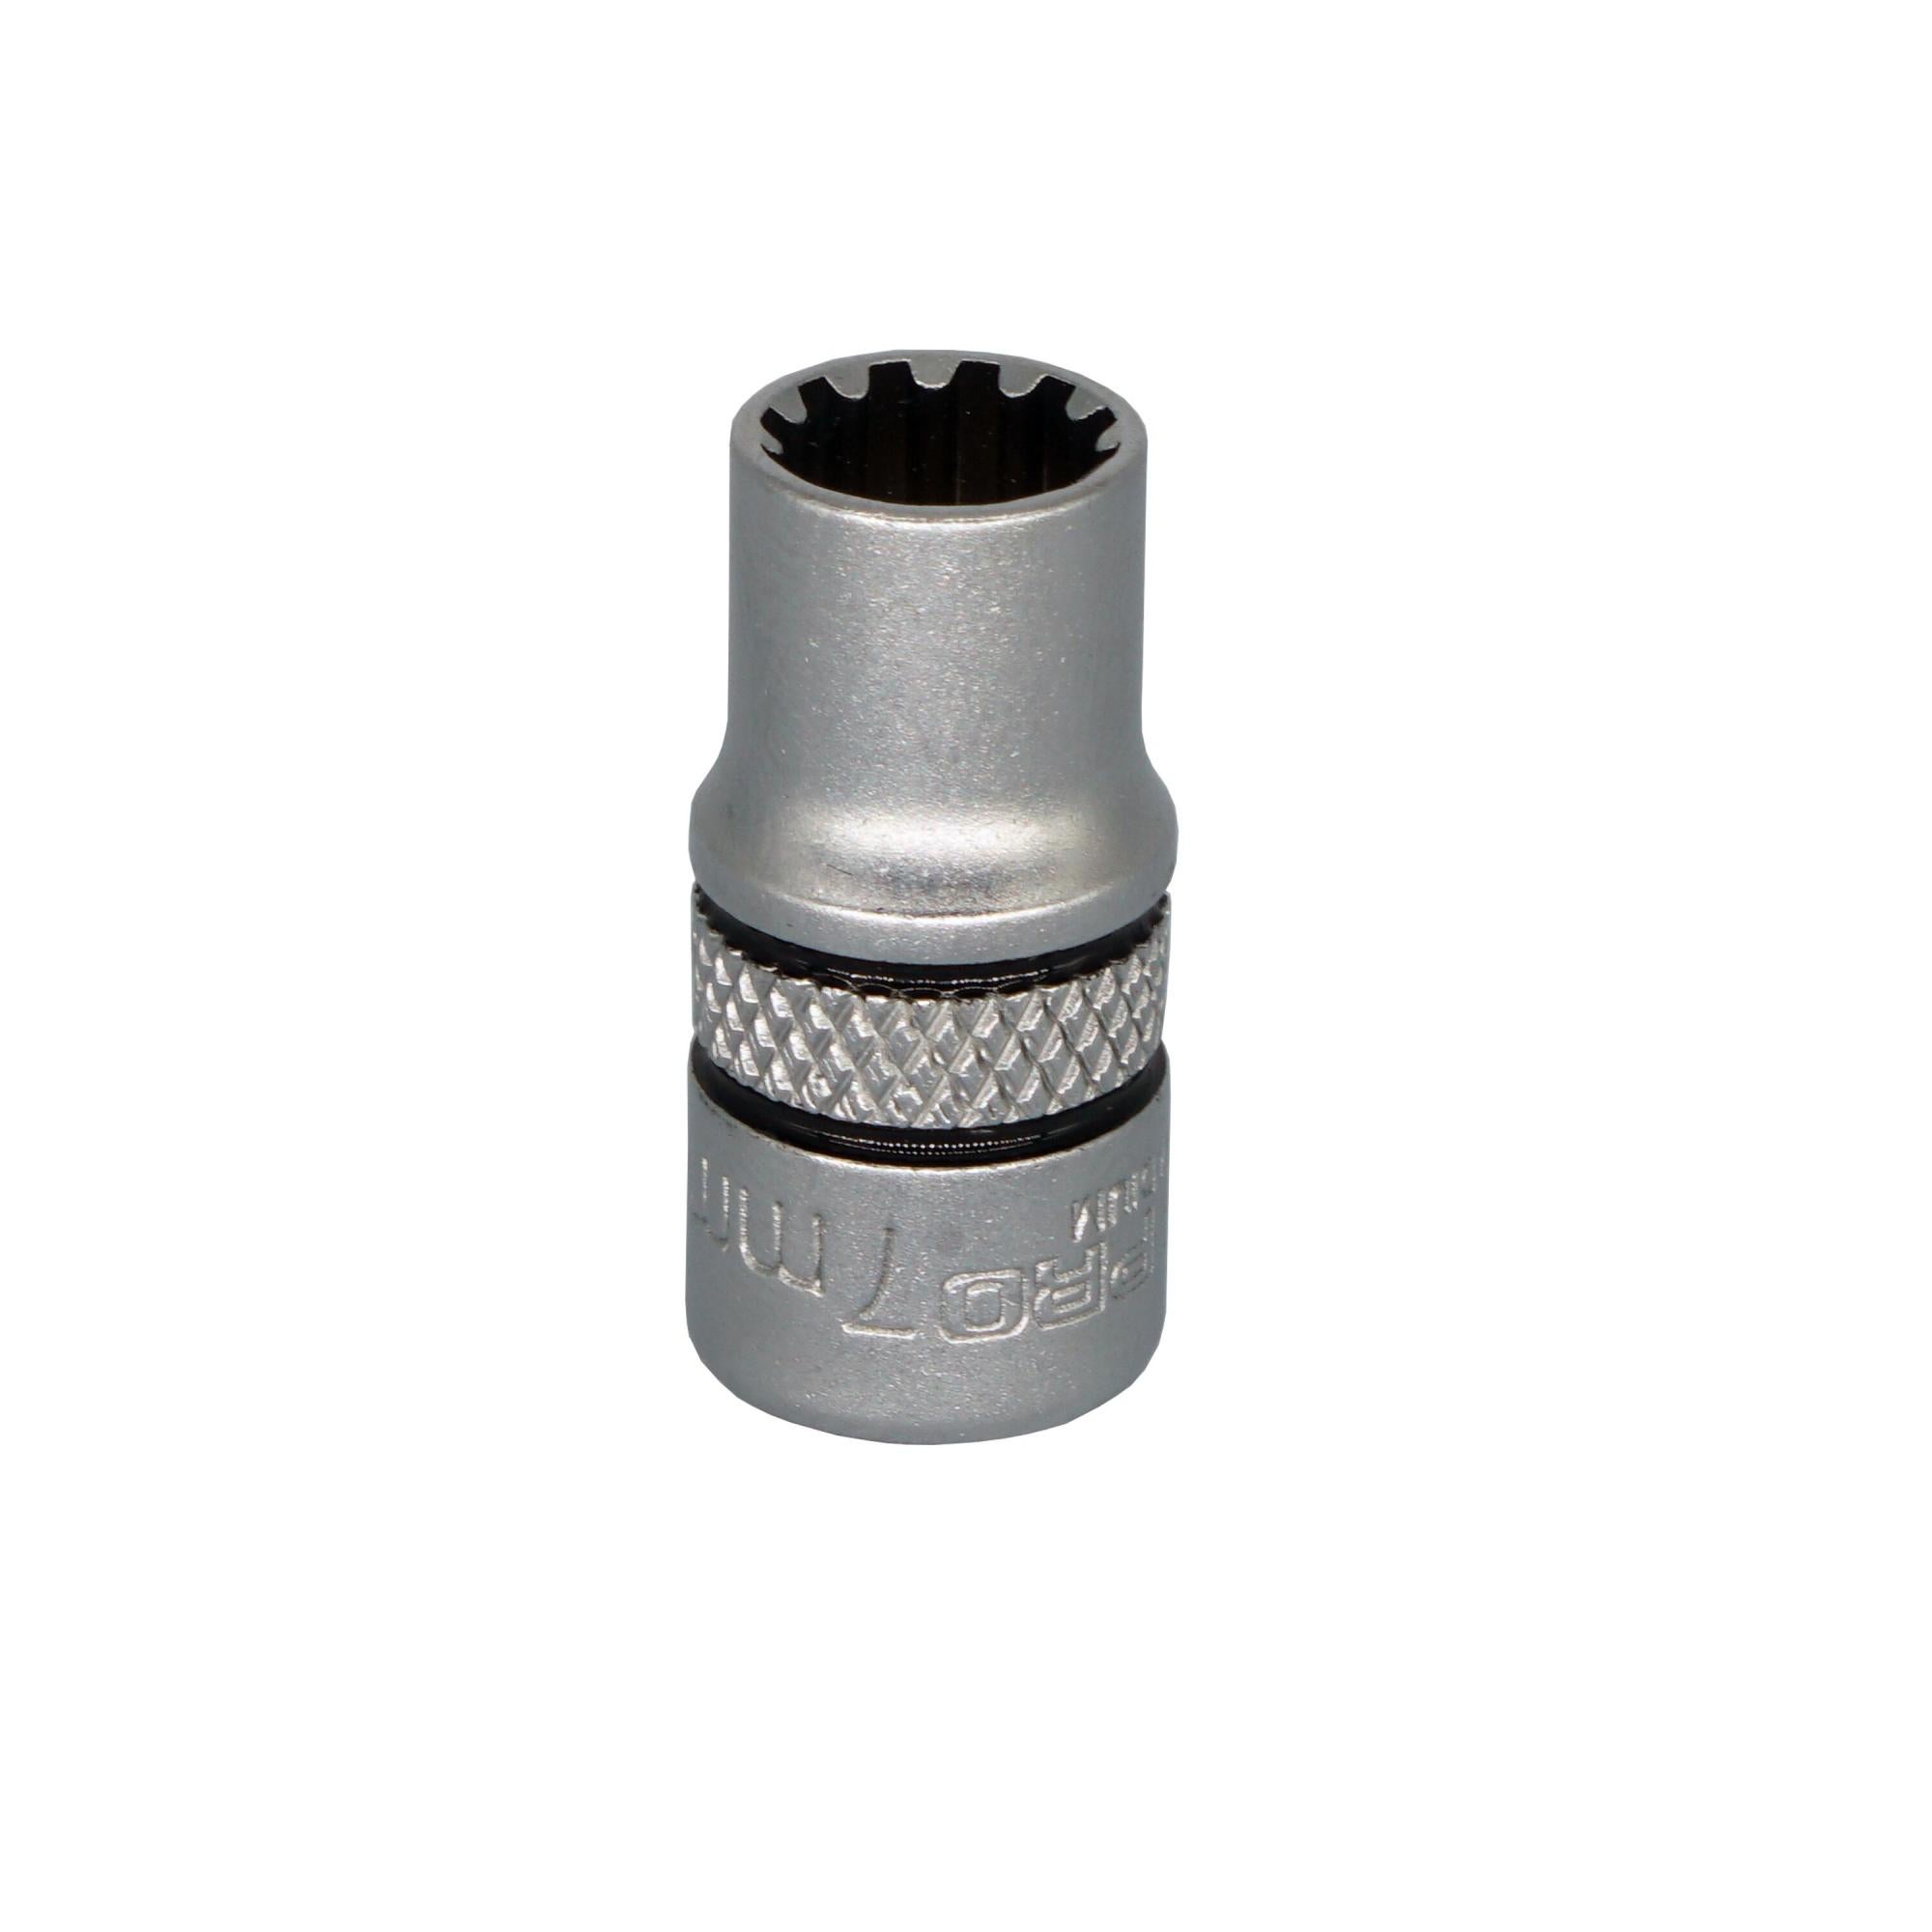  STP16411  Staples - Règle en acier inoxydable, 12 po/30 cm,  Couleurs assorties